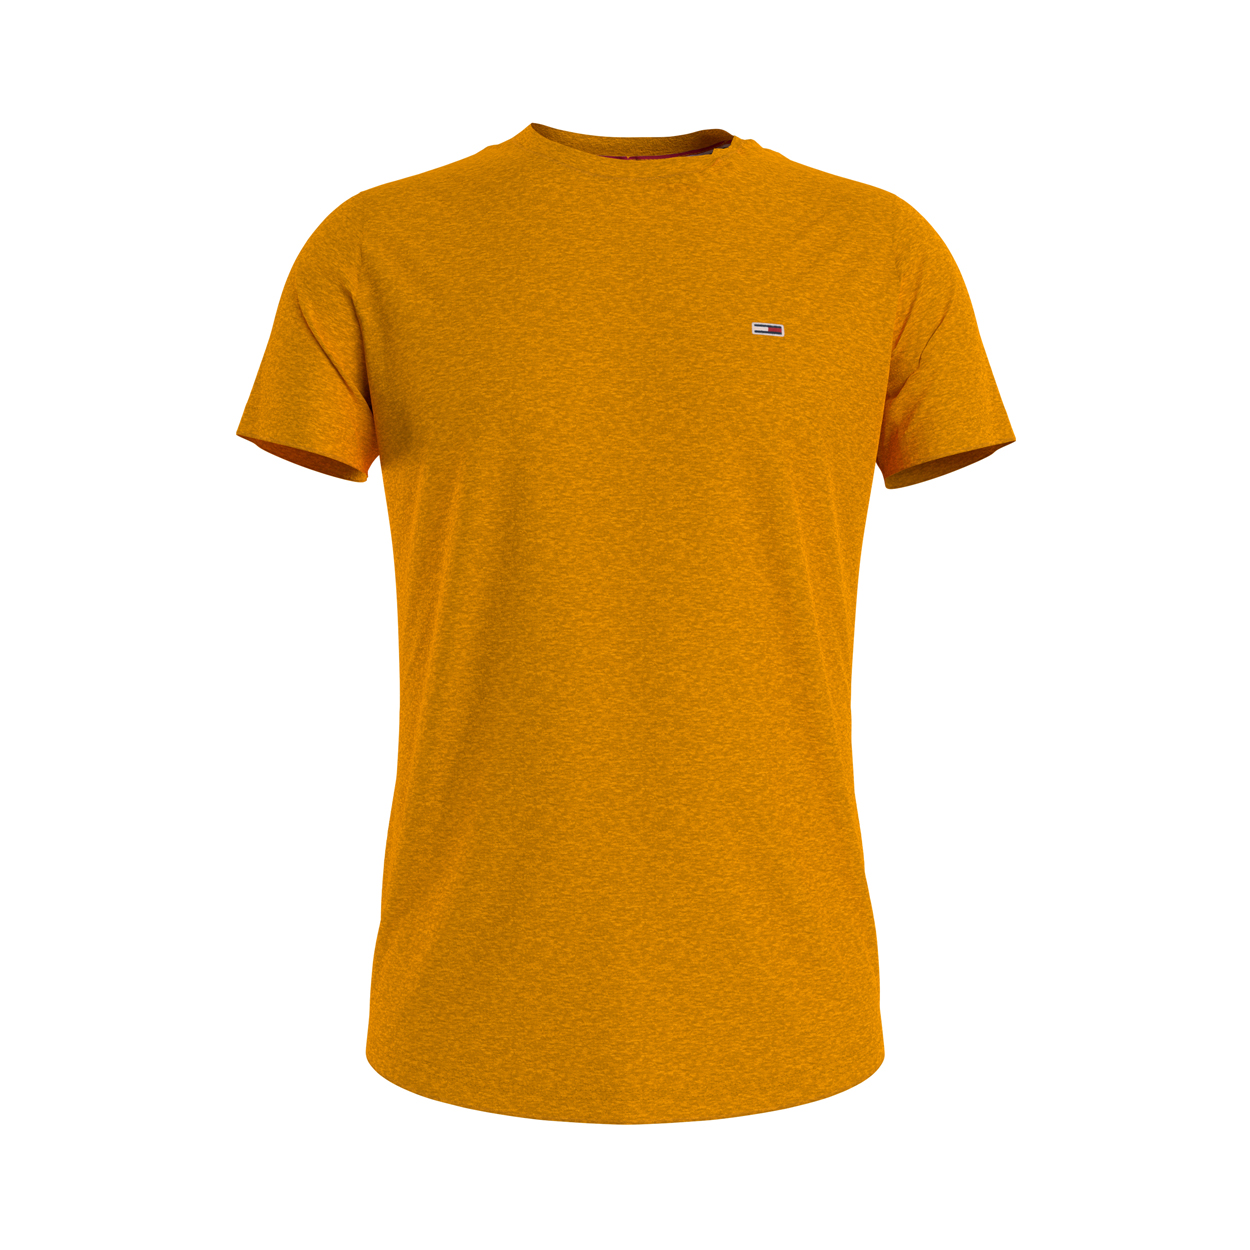 Tee-shirt col rond slim Tommy Jeans en coton mélangé jaune orangé chiné brodé